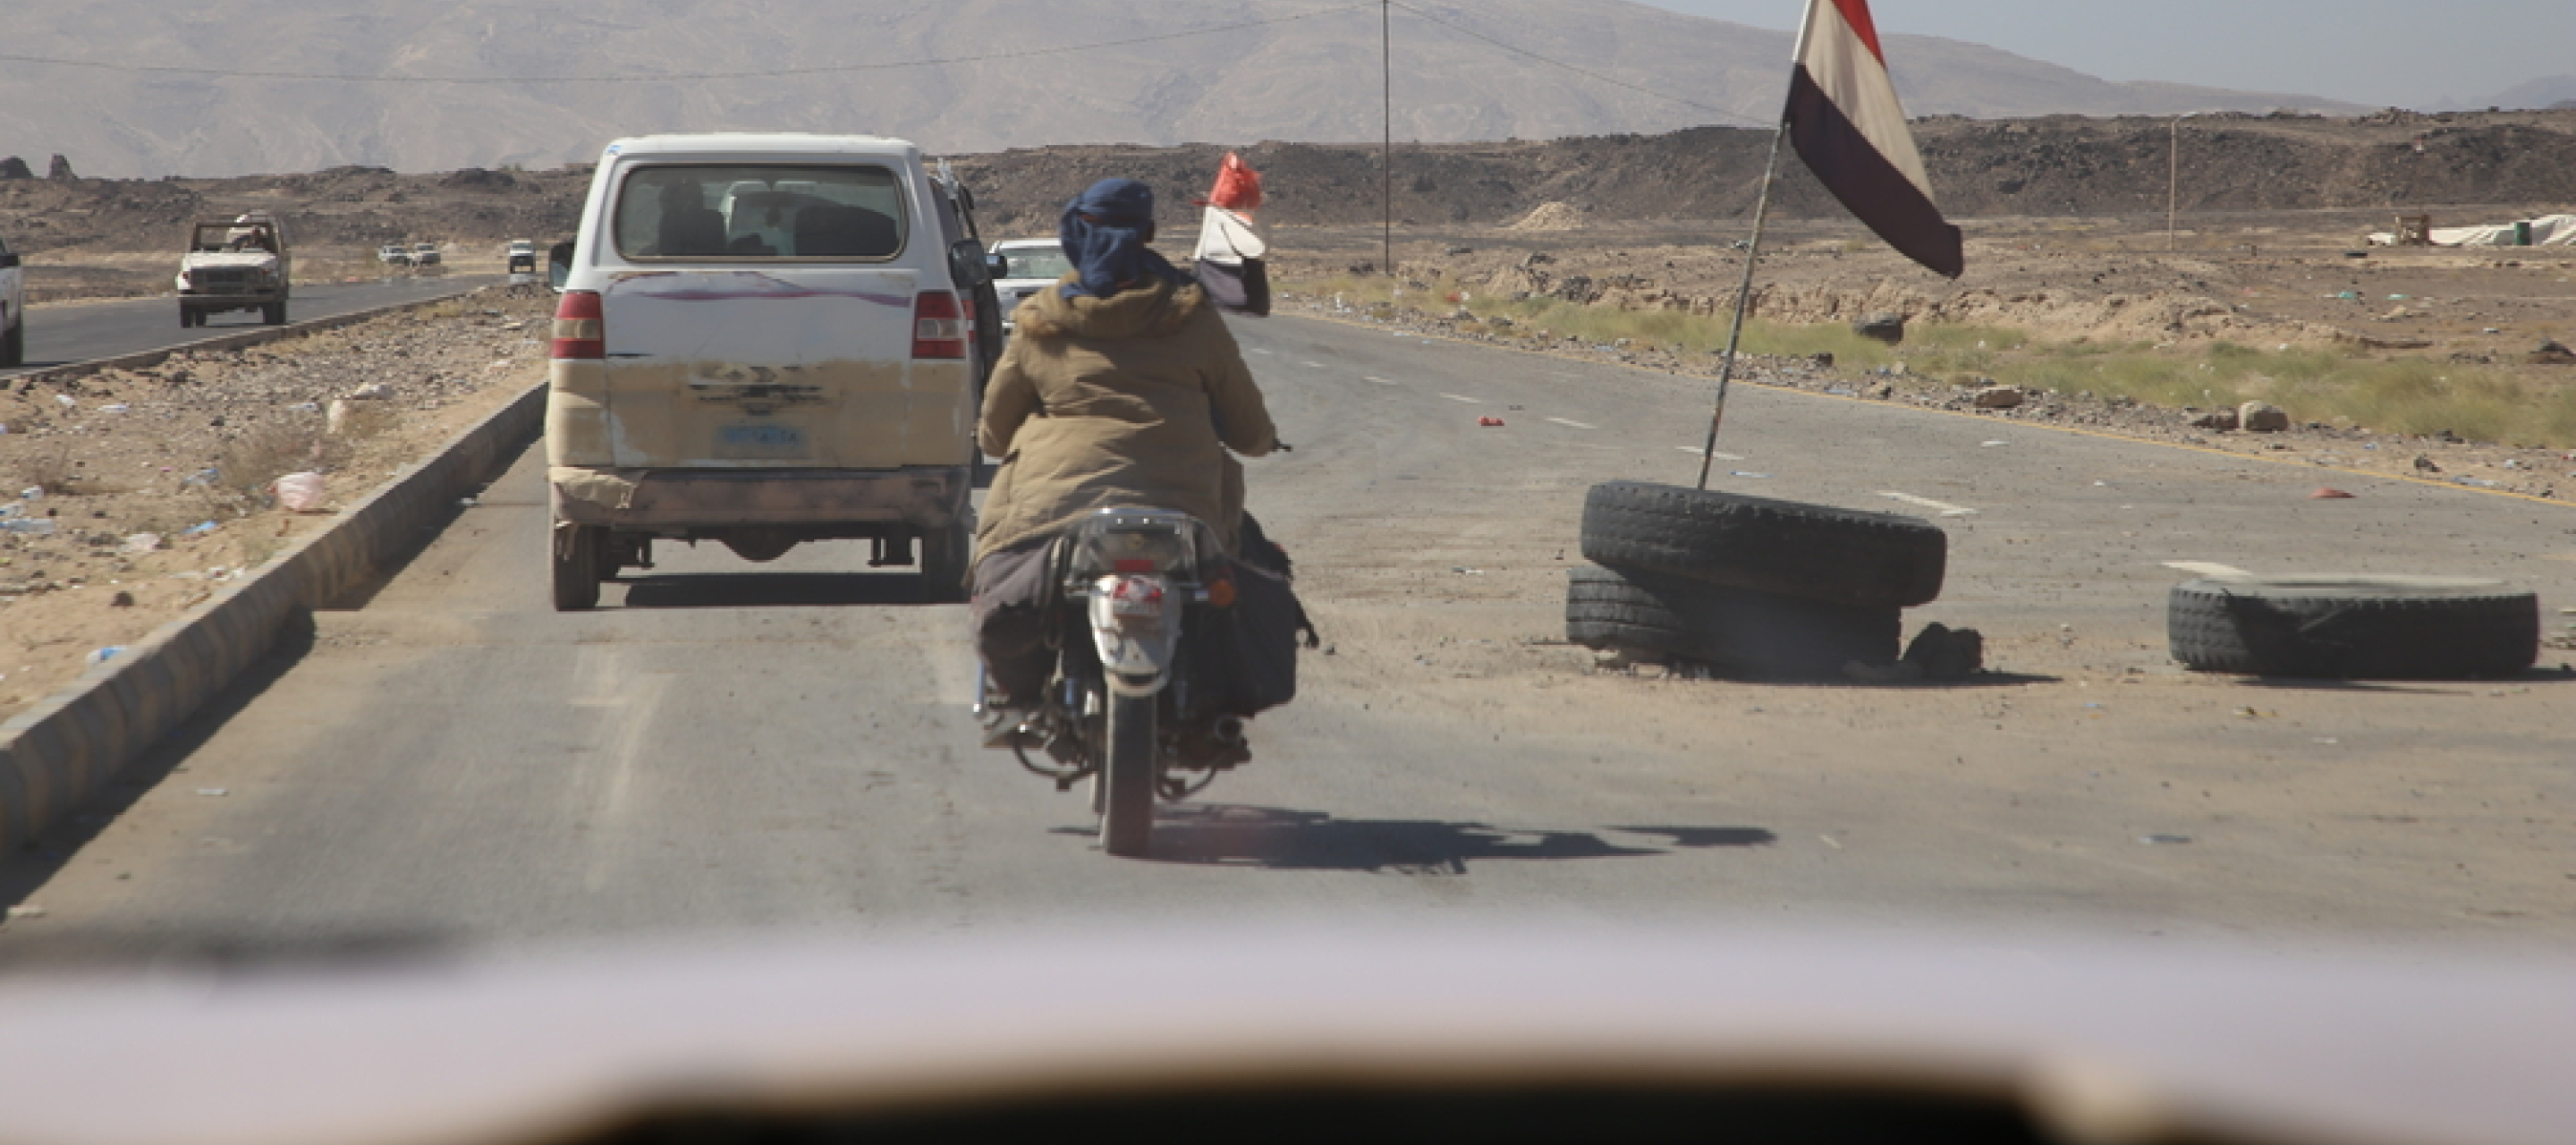 Mehrere Fahrzeuge auf einer Straße von Marib, Jemen